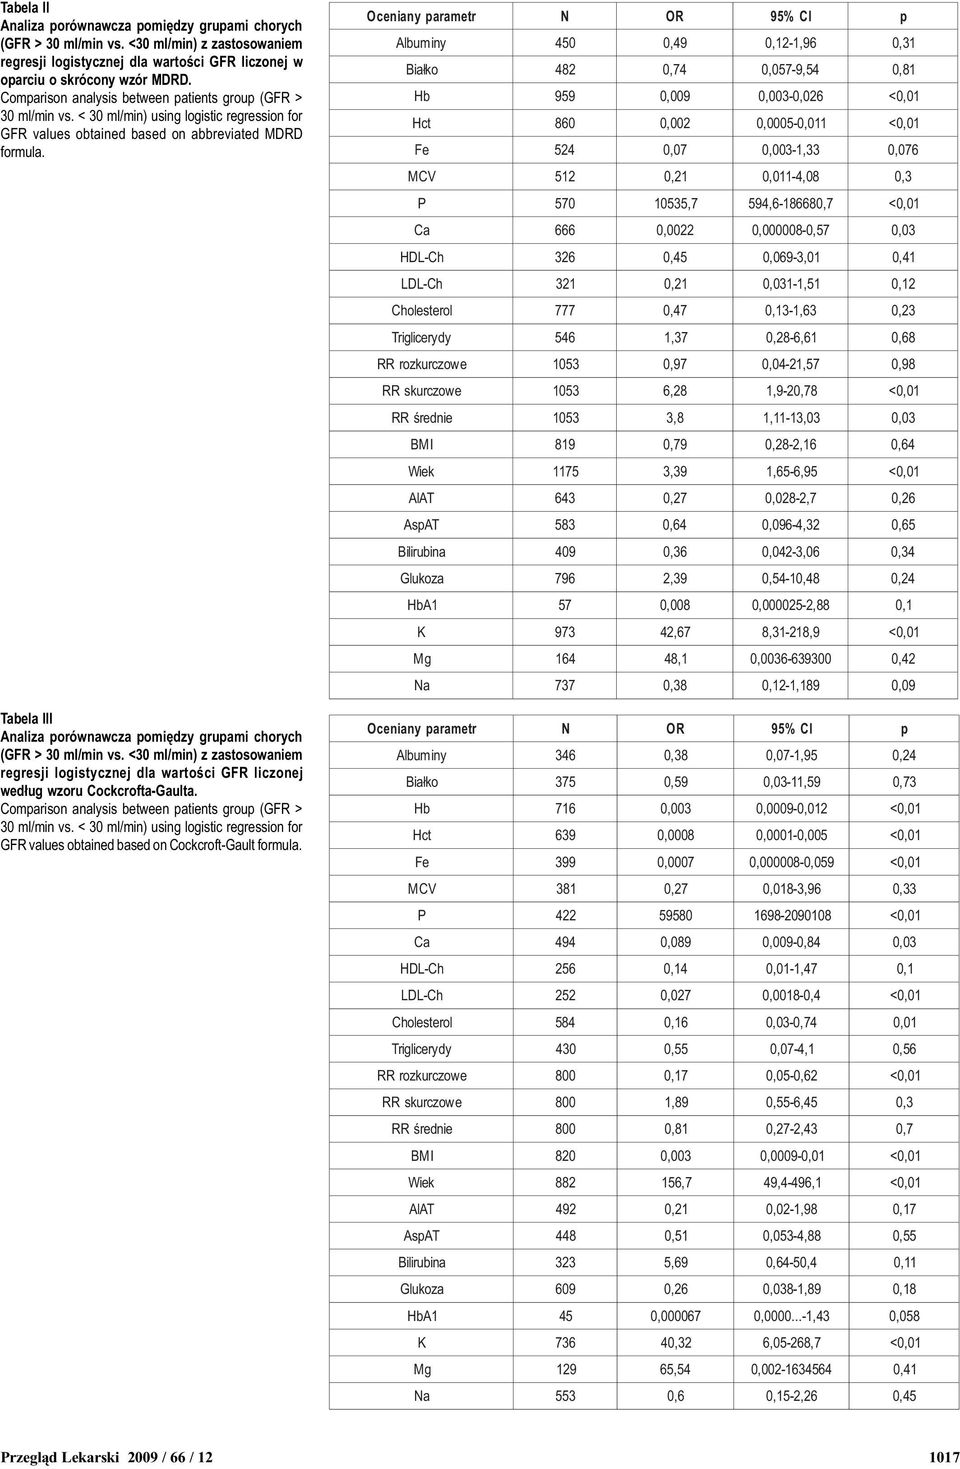 Tabela III Analiza porównawcza pomiêdzy grupami chorych (GFR > 3 ml/min vs. <3 ml/min) z zastosowaniem regresji logistycznej dla wartoœci GFR liczonej wed³ug wzoru Cockcrofta-Gaulta.